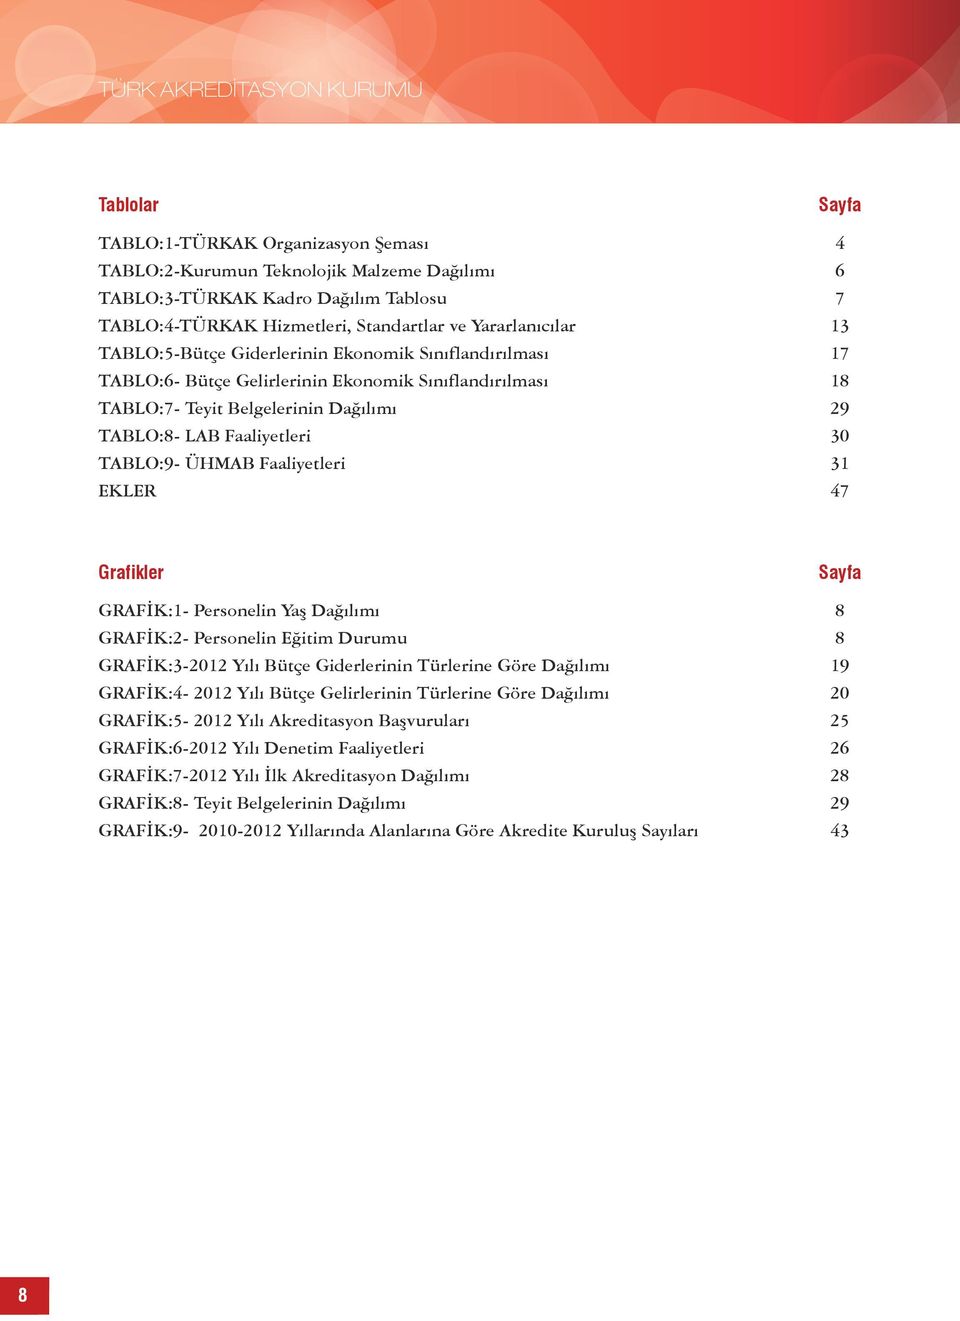 LAB Faaliyetleri 30 TABLO:9- ÜHMAB Faaliyetleri 31 EKLER 47 Grafikler Sayfa GRAFİK:1- Personelin Yaş Dağılımı 8 GRAFİK:2- Personelin Eğitim Durumu 8 GRAFİK:3-2012 Yılı Bütçe Giderlerinin Türlerine